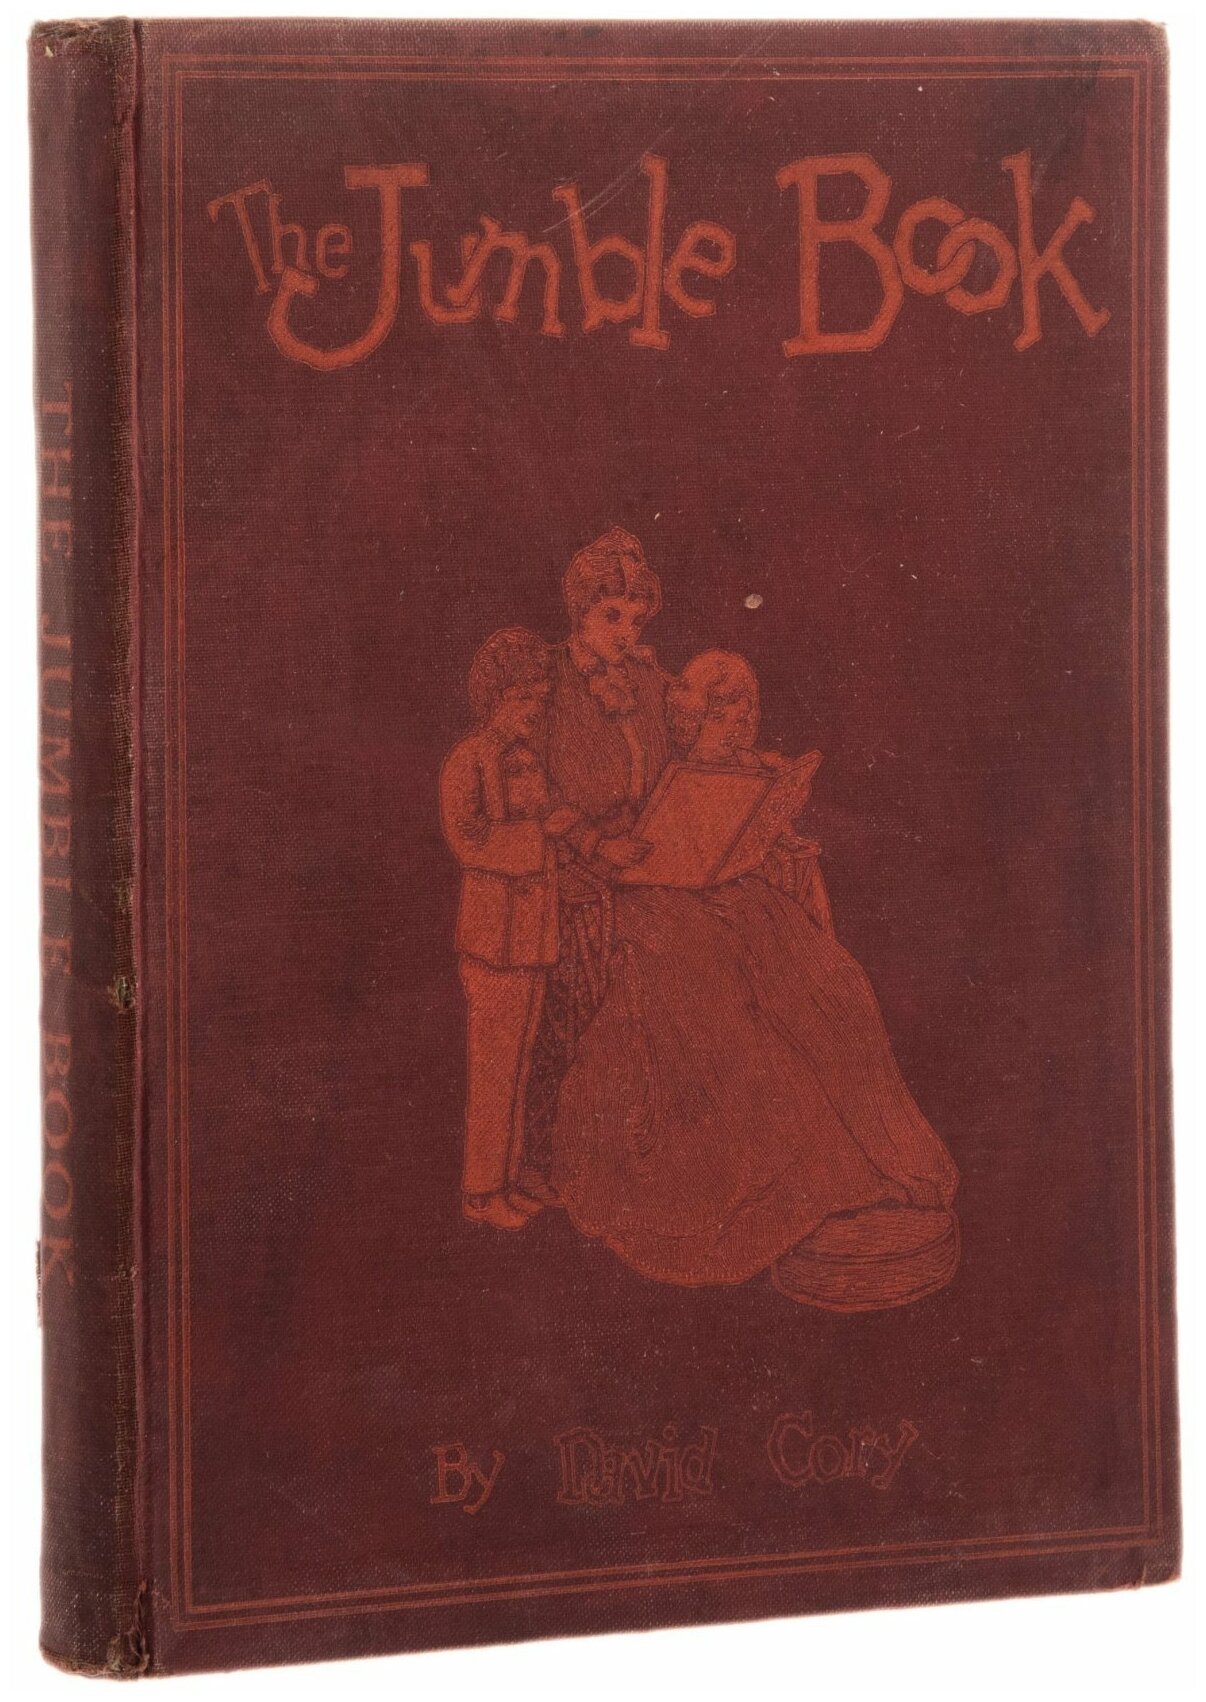 David Cory "The Jumble Book" (сборник сказочных историй на английском языке), бумага, печать